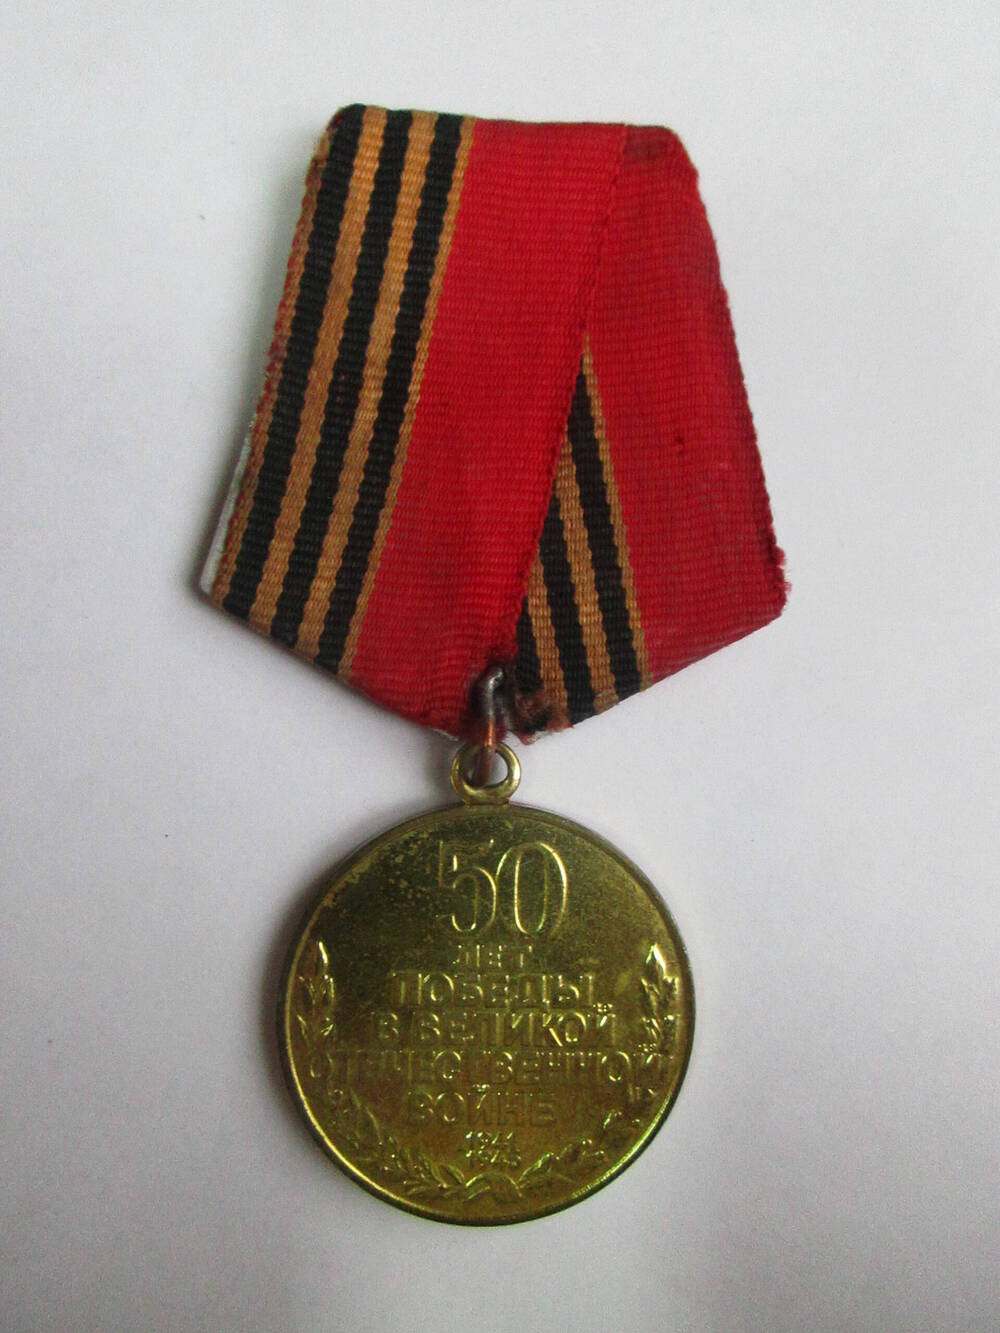 Медаль 50 лет Победы в ВОВ 1941-1945гг. Награждена Киктенко В.Е.